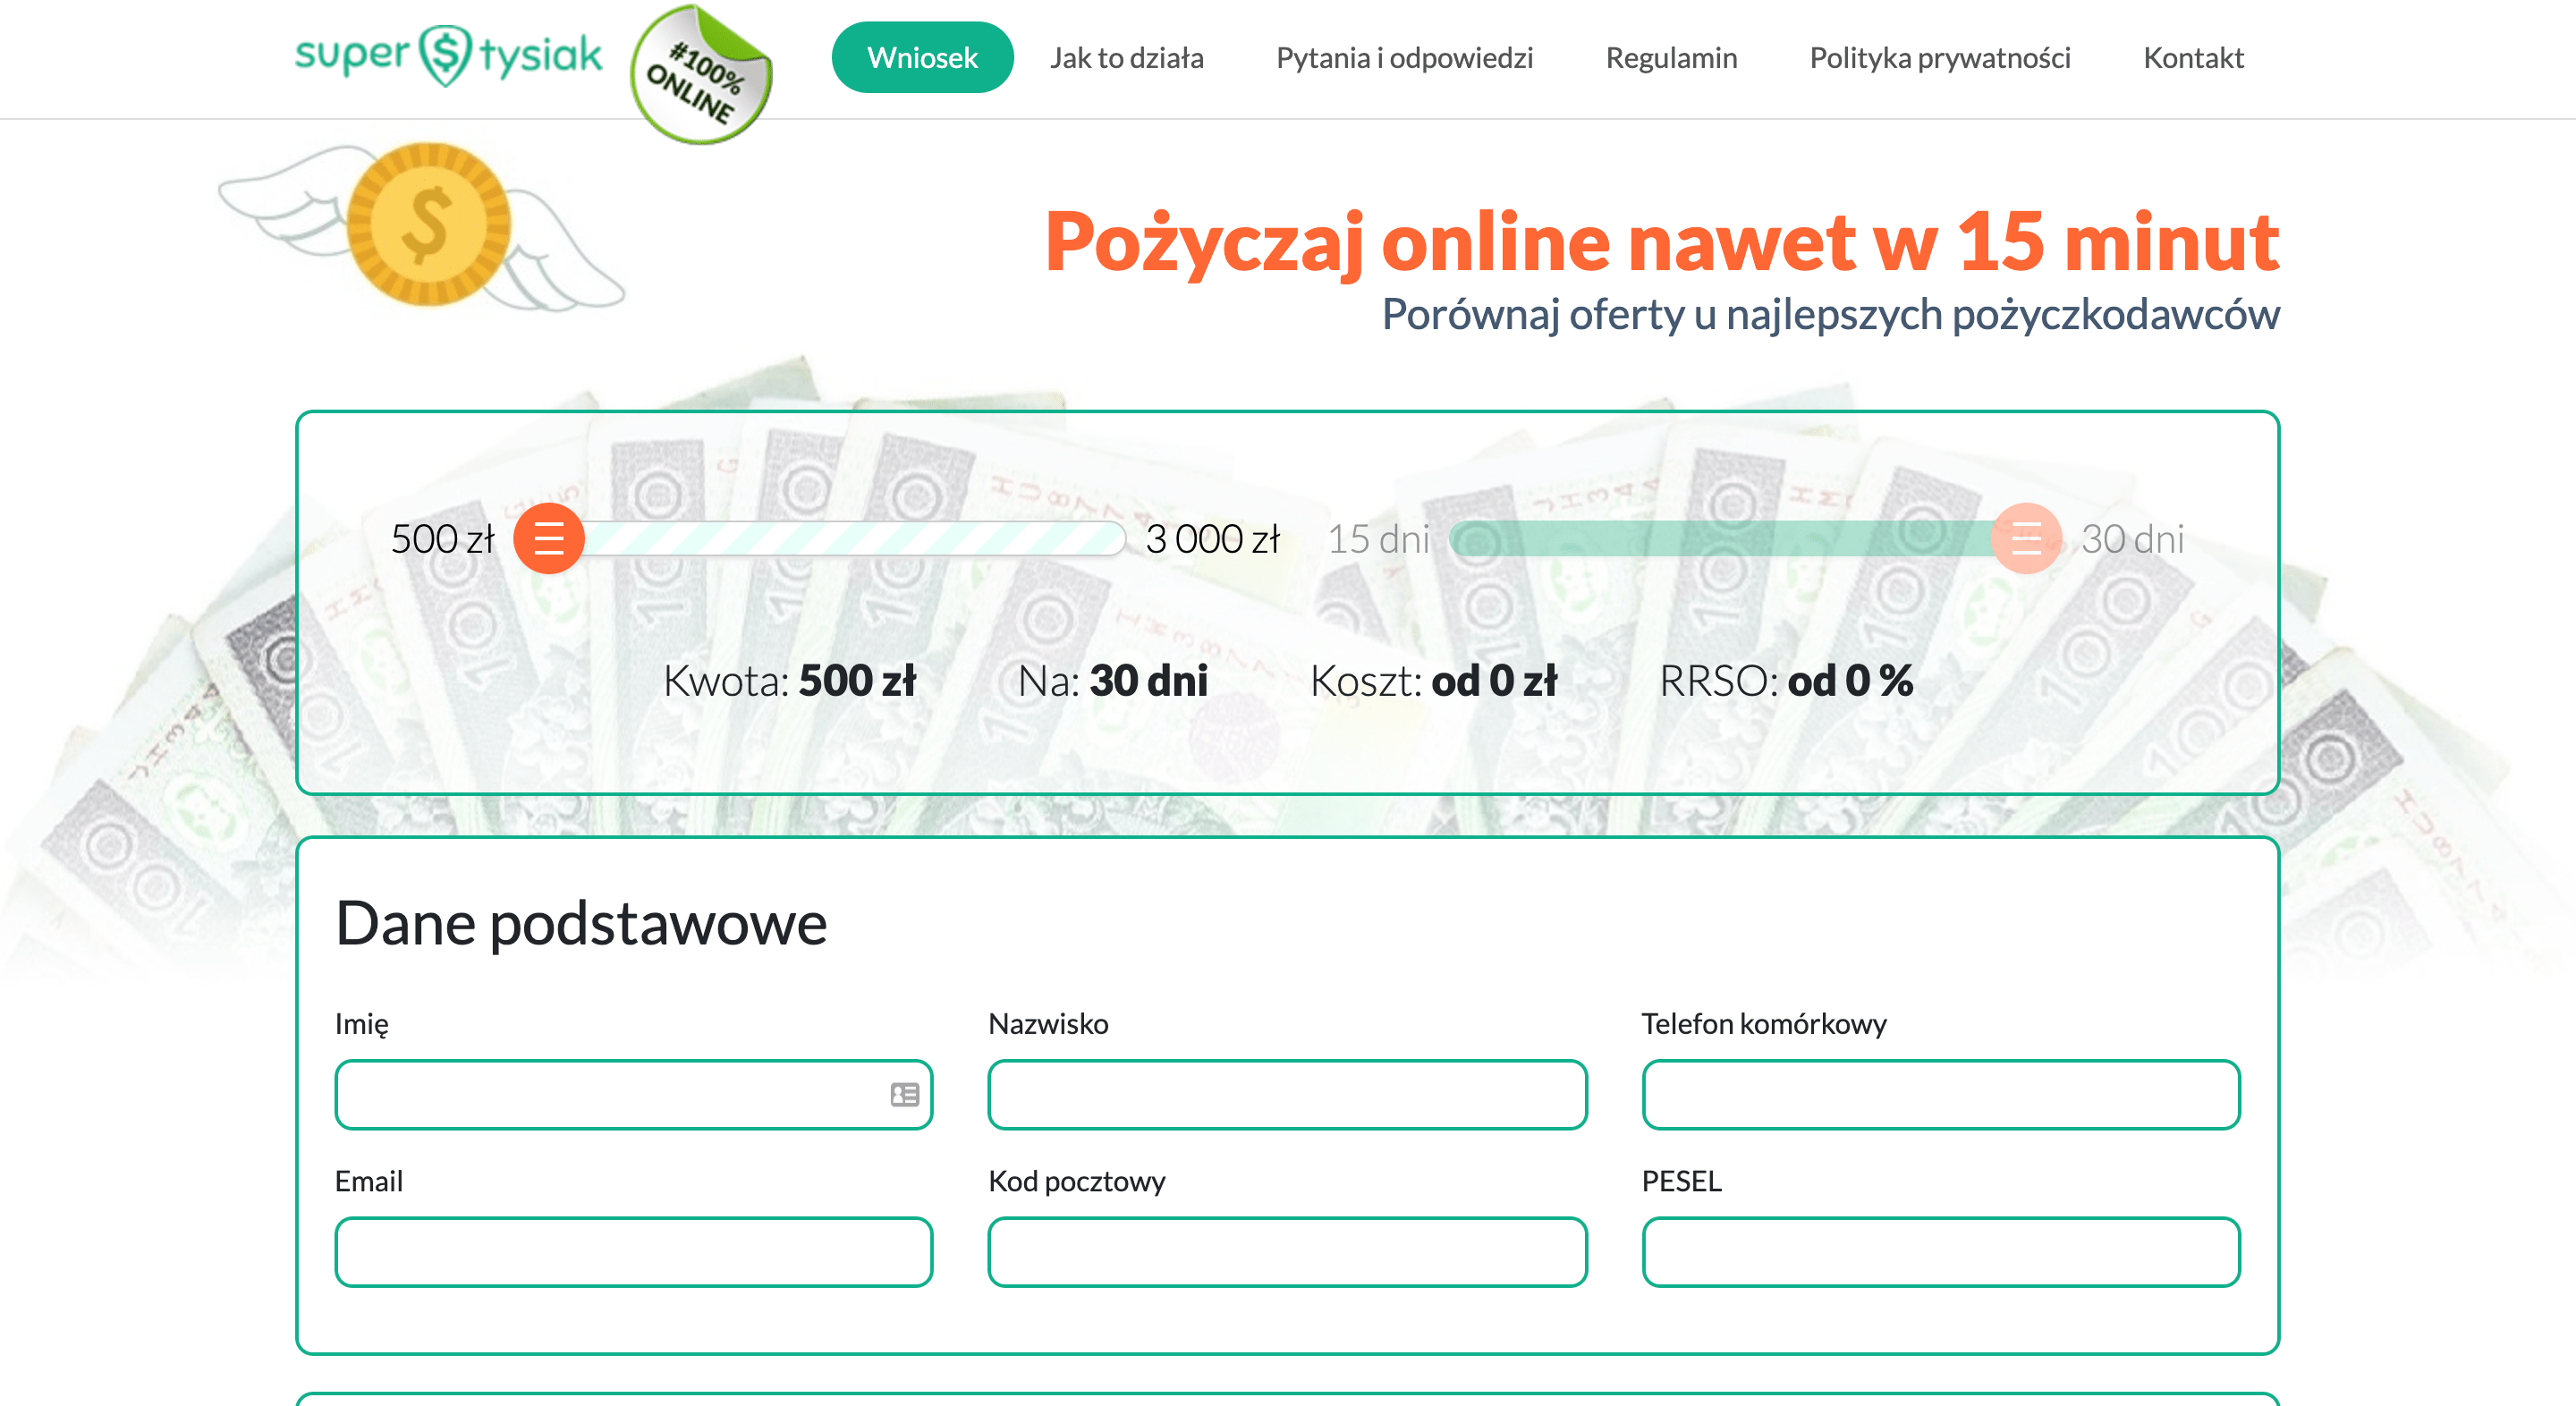 Super Tysiak - Pożyczki do 3 000 zł.